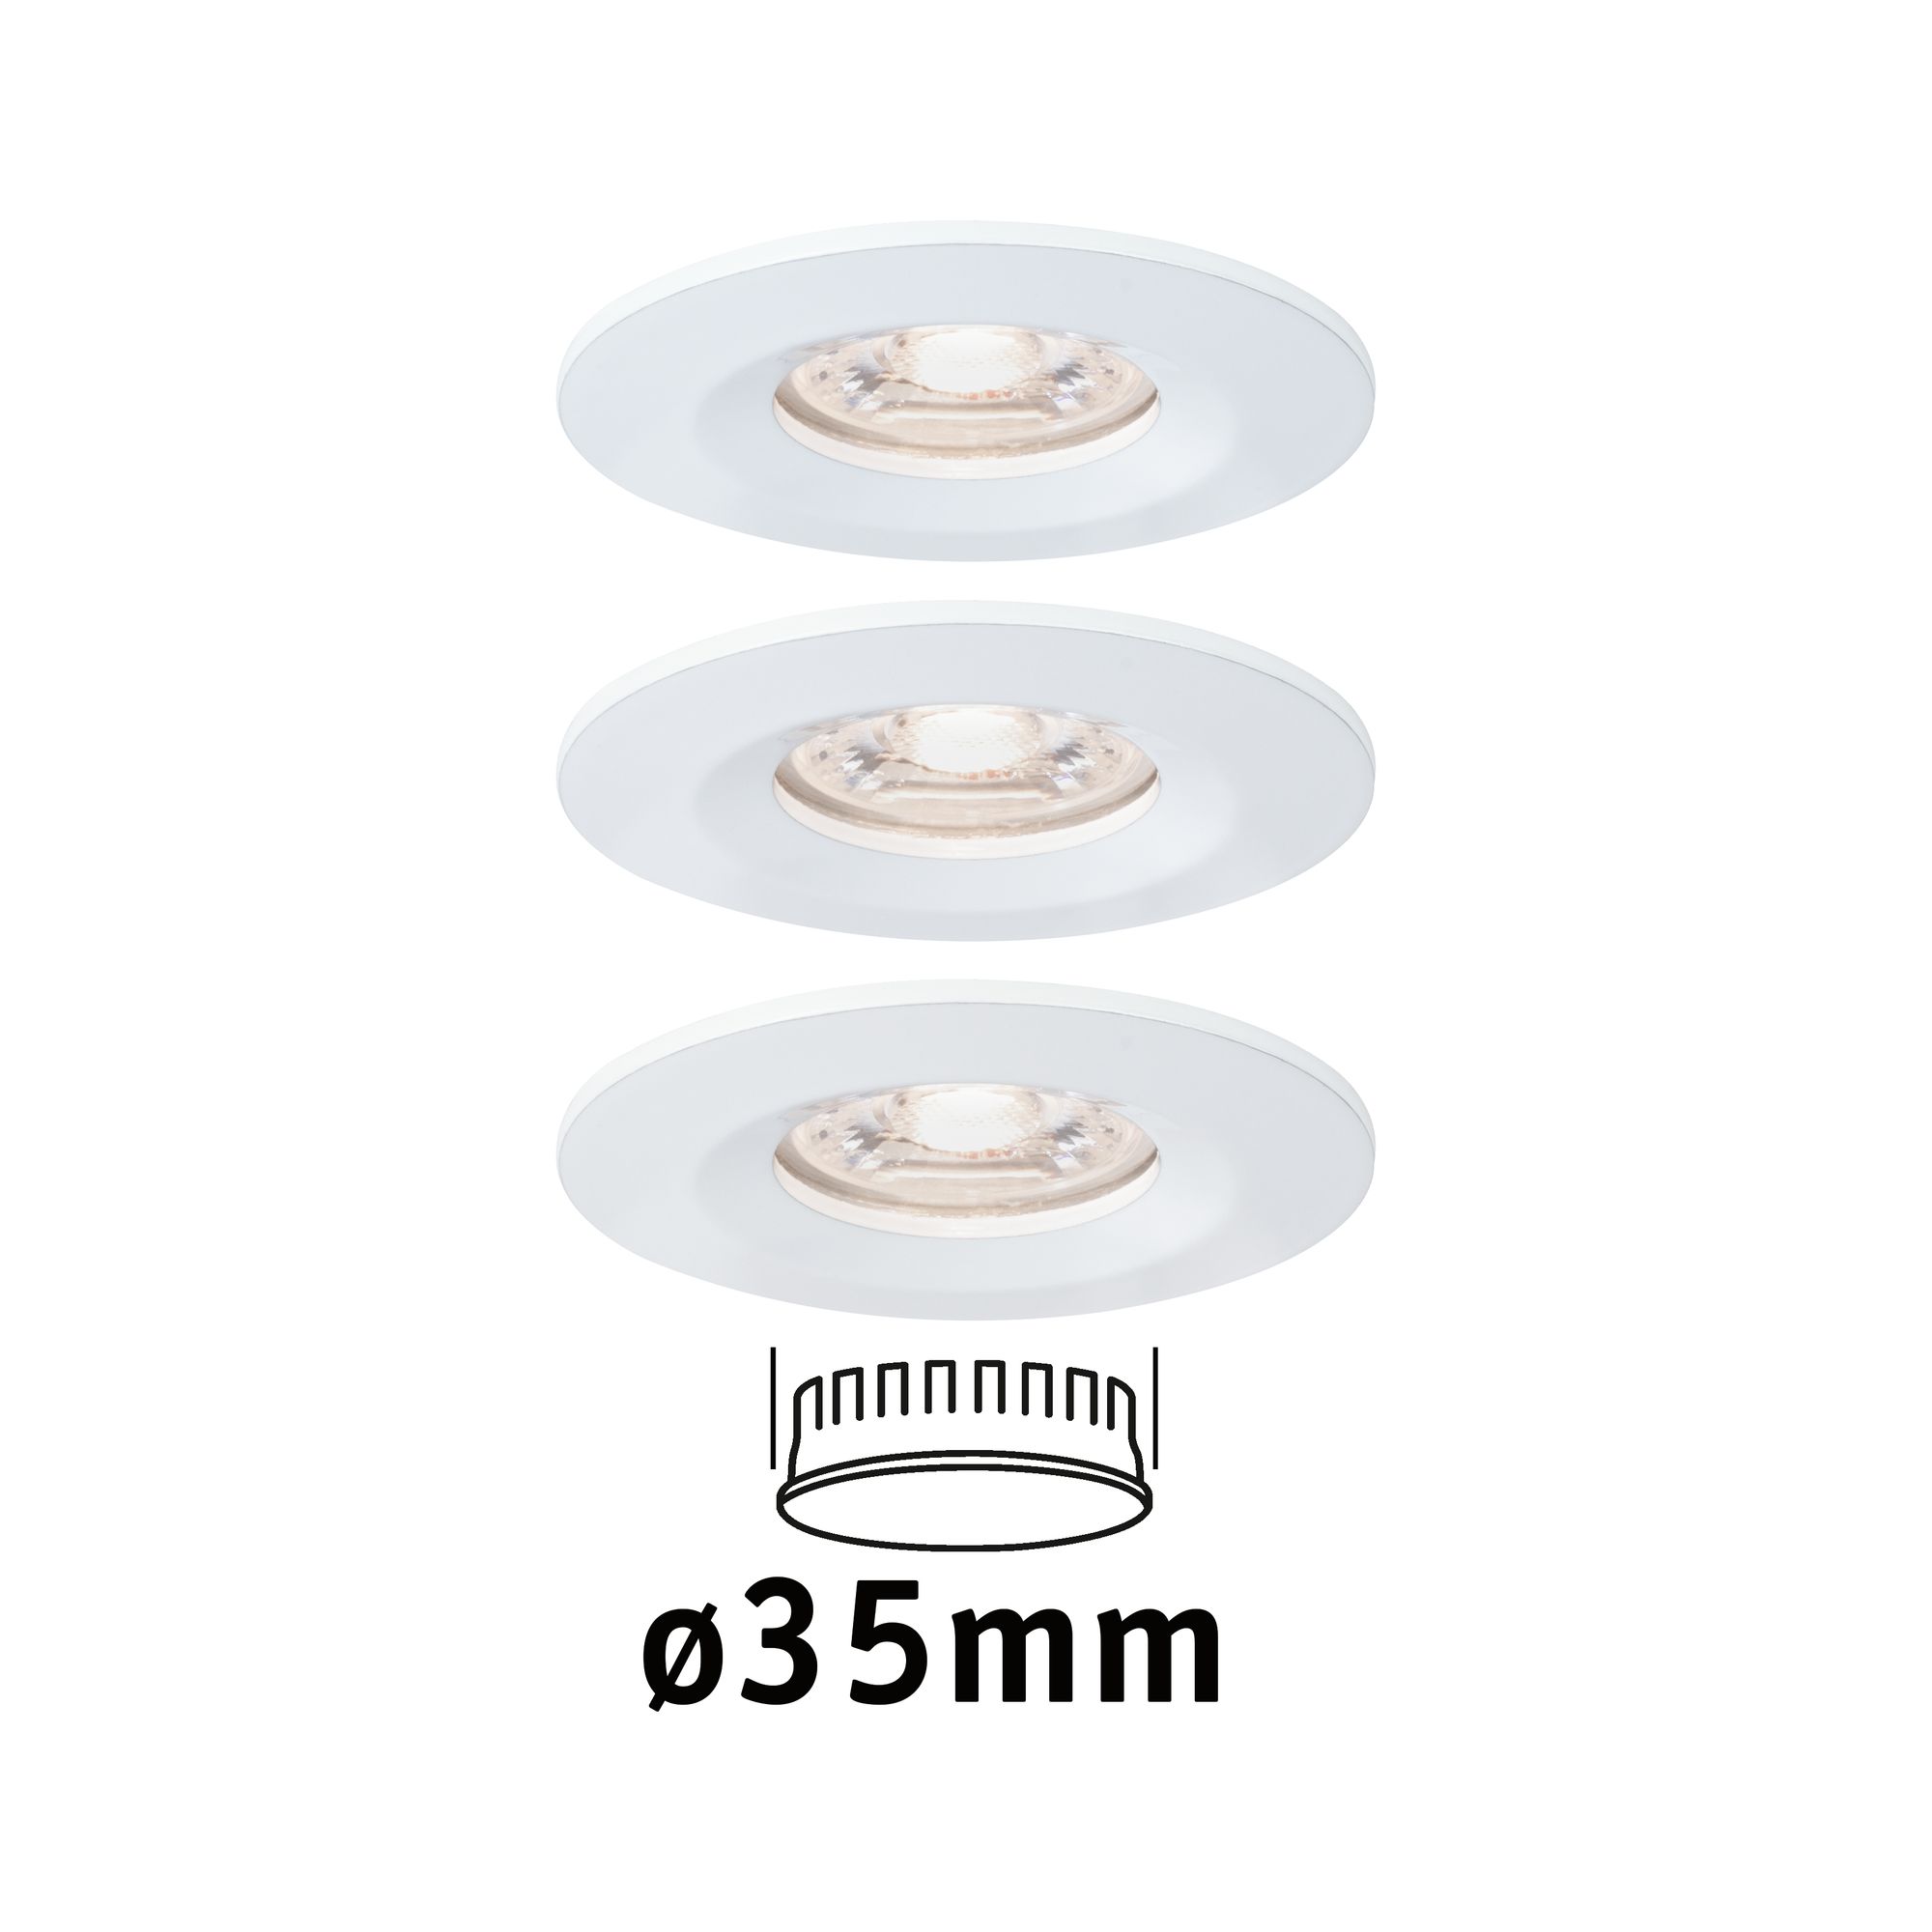 PAULMANN - LED vestavné svítidlo Nova mini nevýklopné IP44 3x4W 2.700K bílá, P 94299